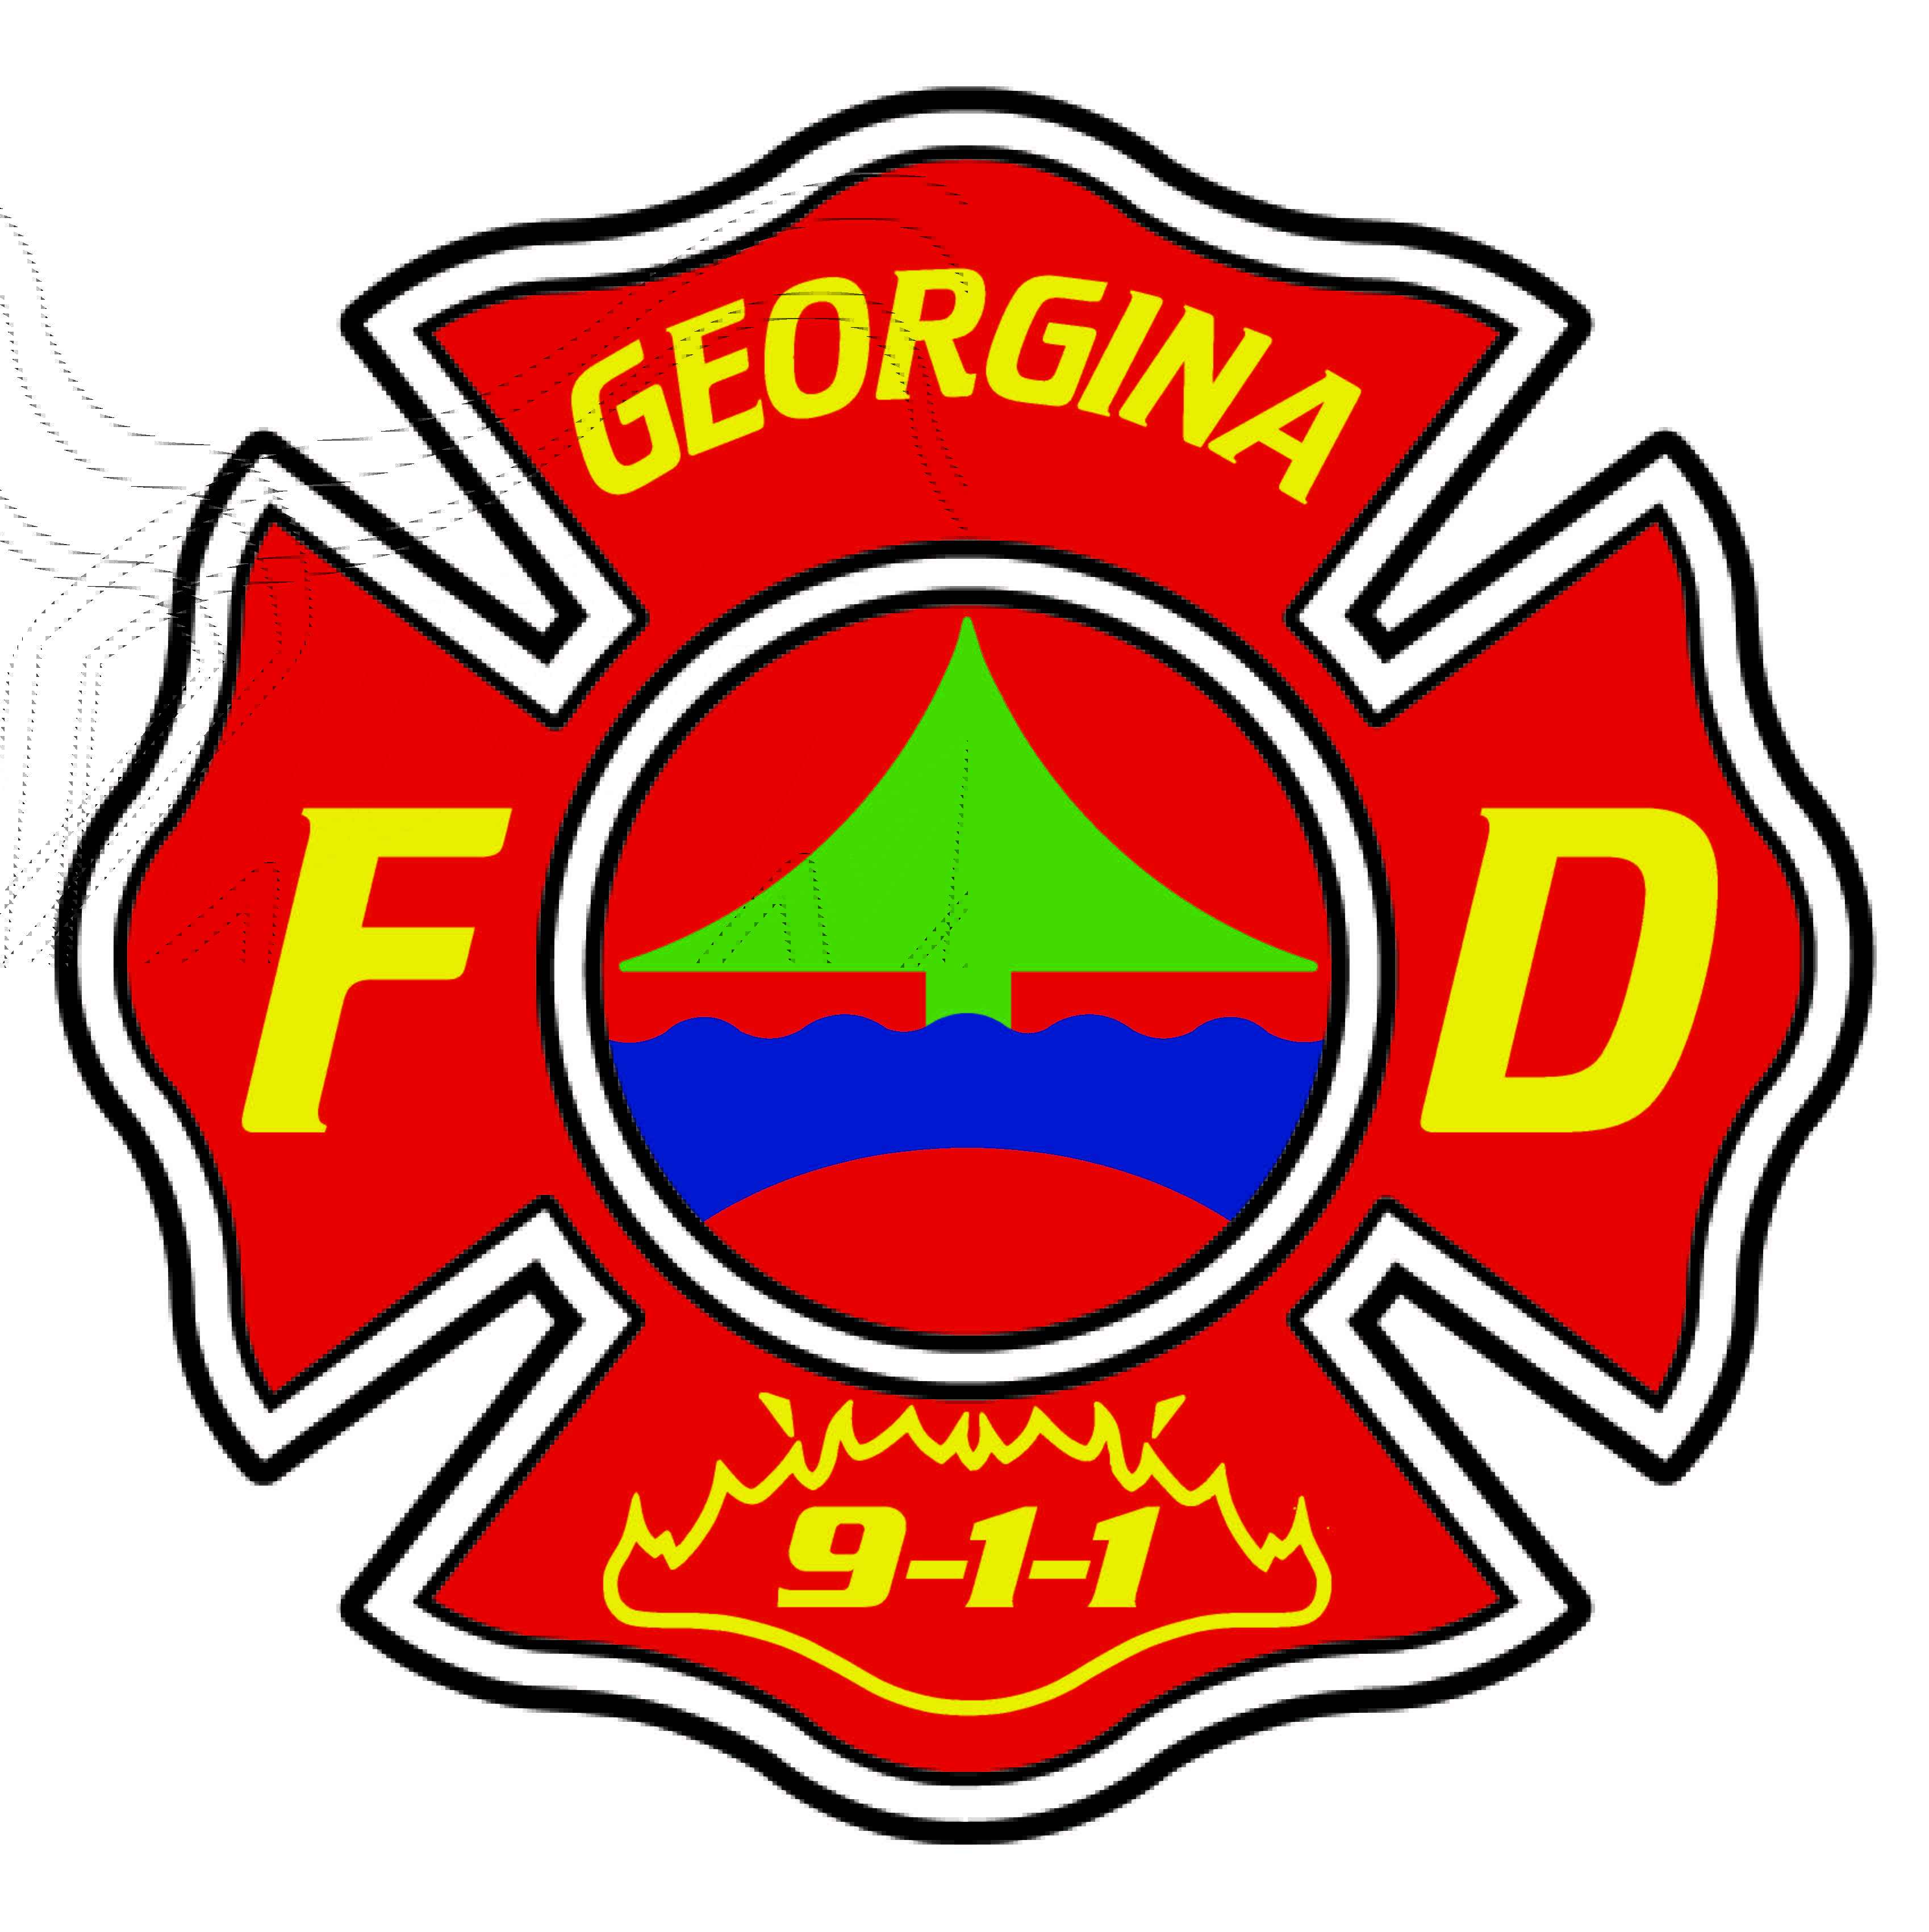 Georgina Fire and Rescue services logo